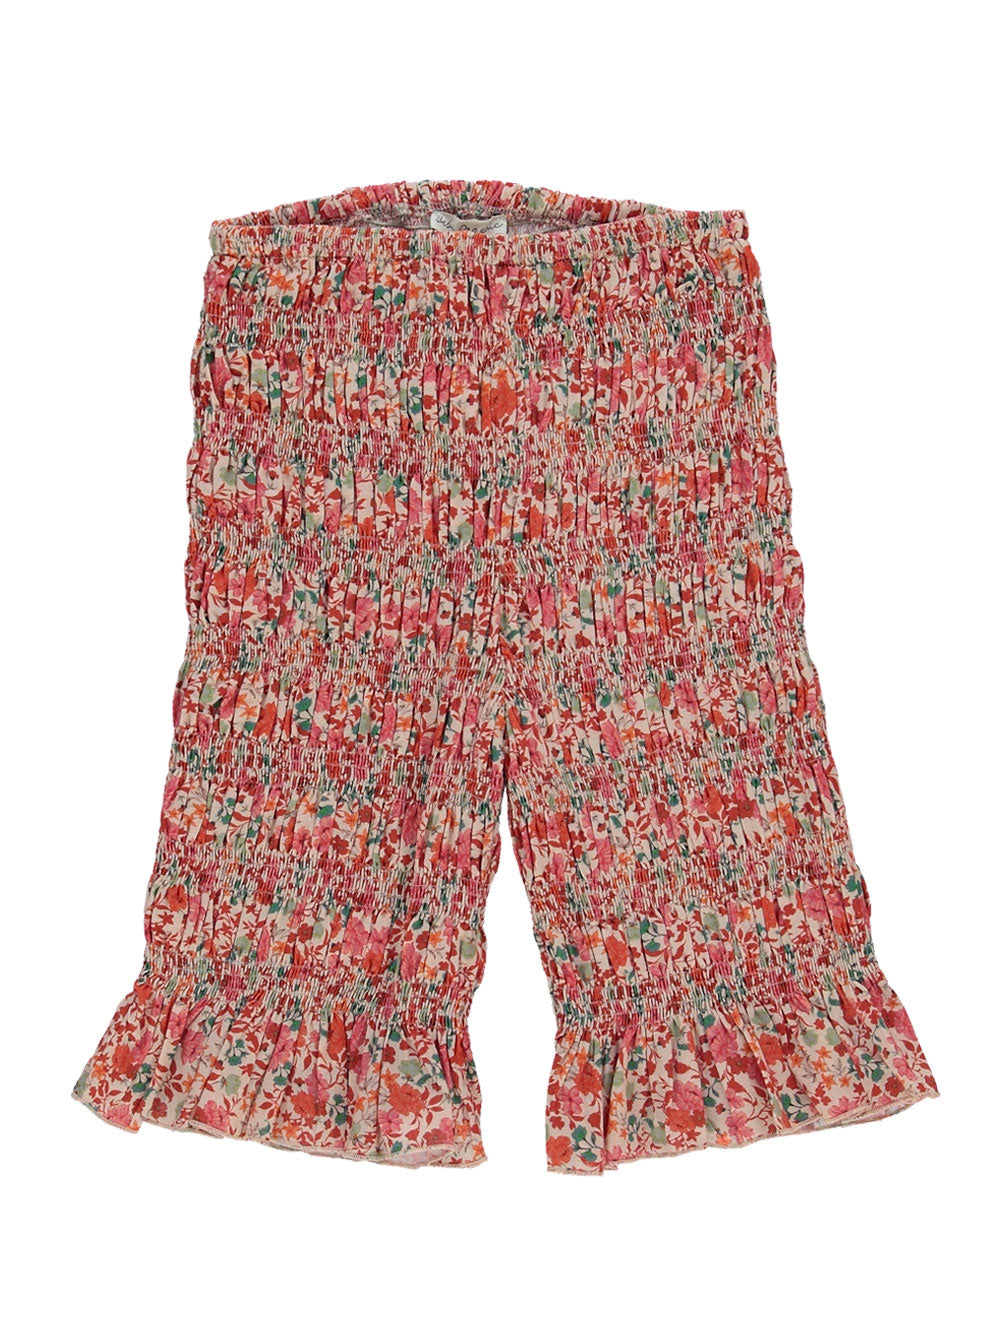 Clara Floral Smocked Shorts